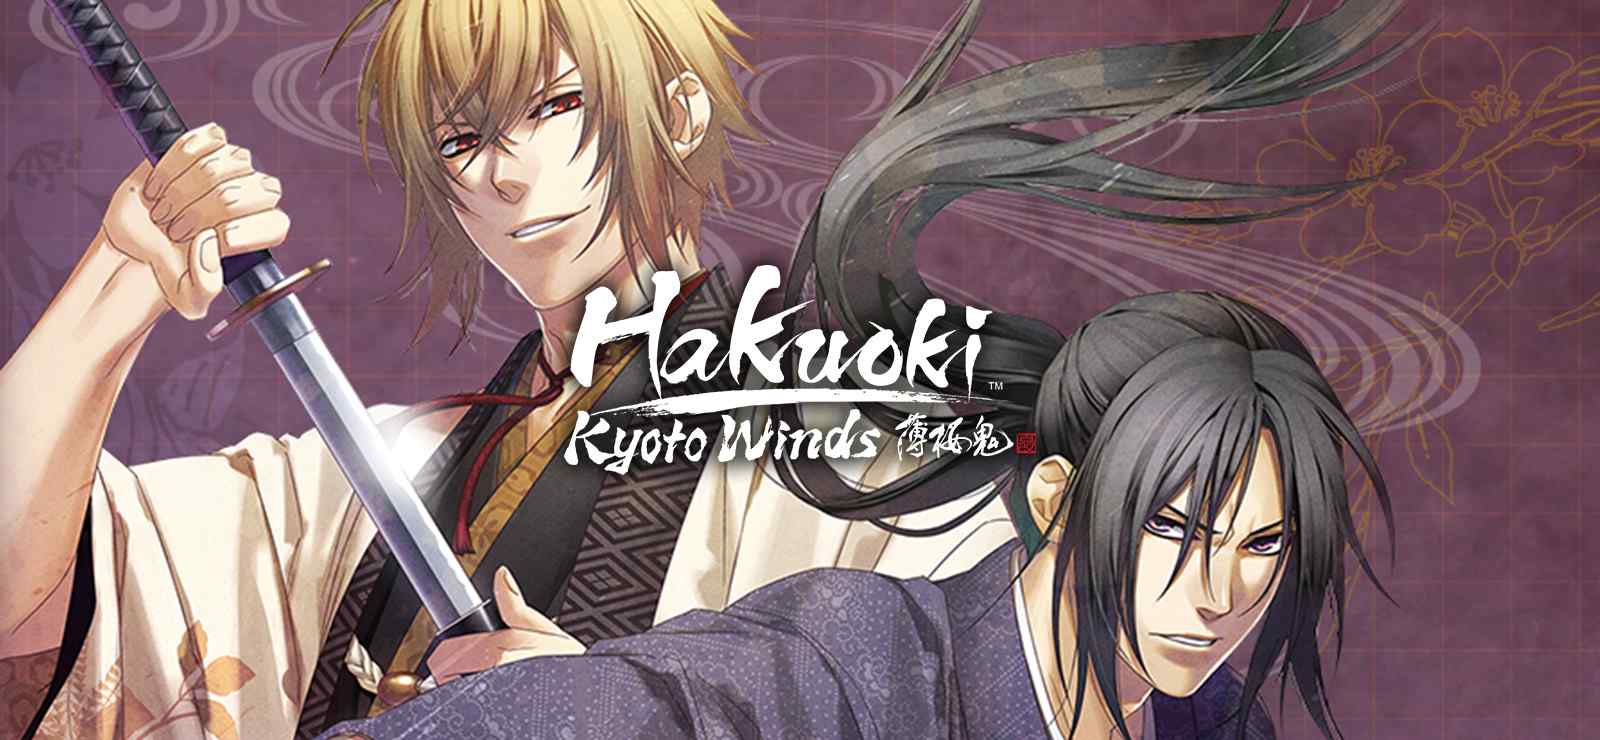 Hakuoki- Kyoto Winds